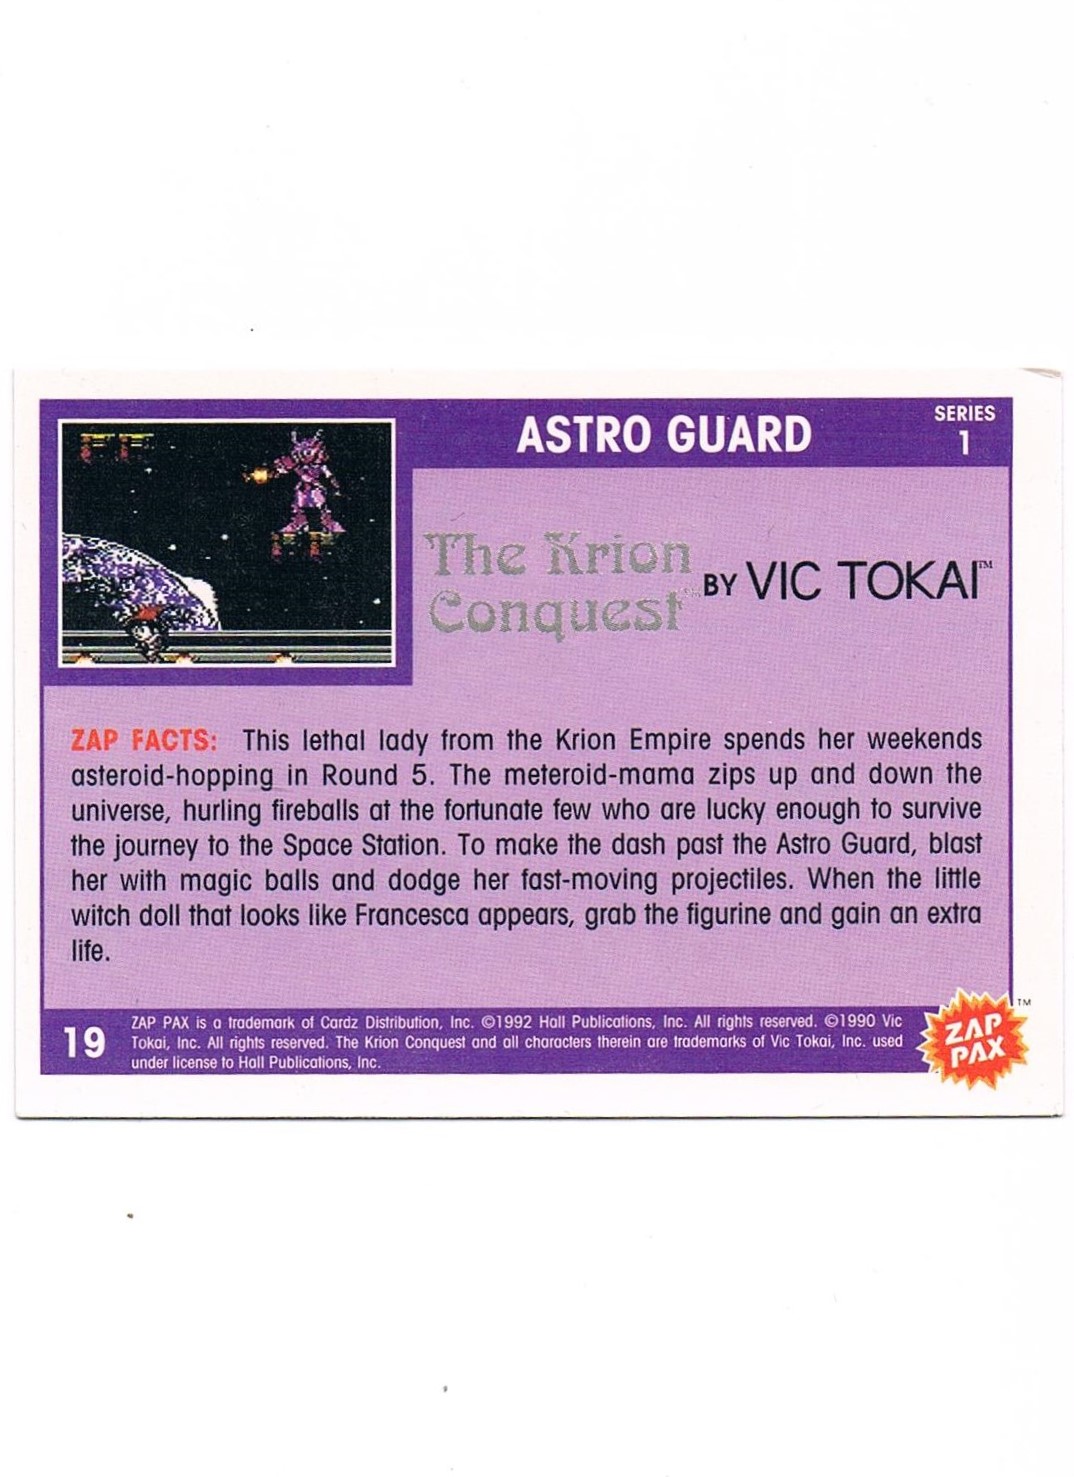 Zap Pax No. 19 - The Krion Conquest Astro Guard 2